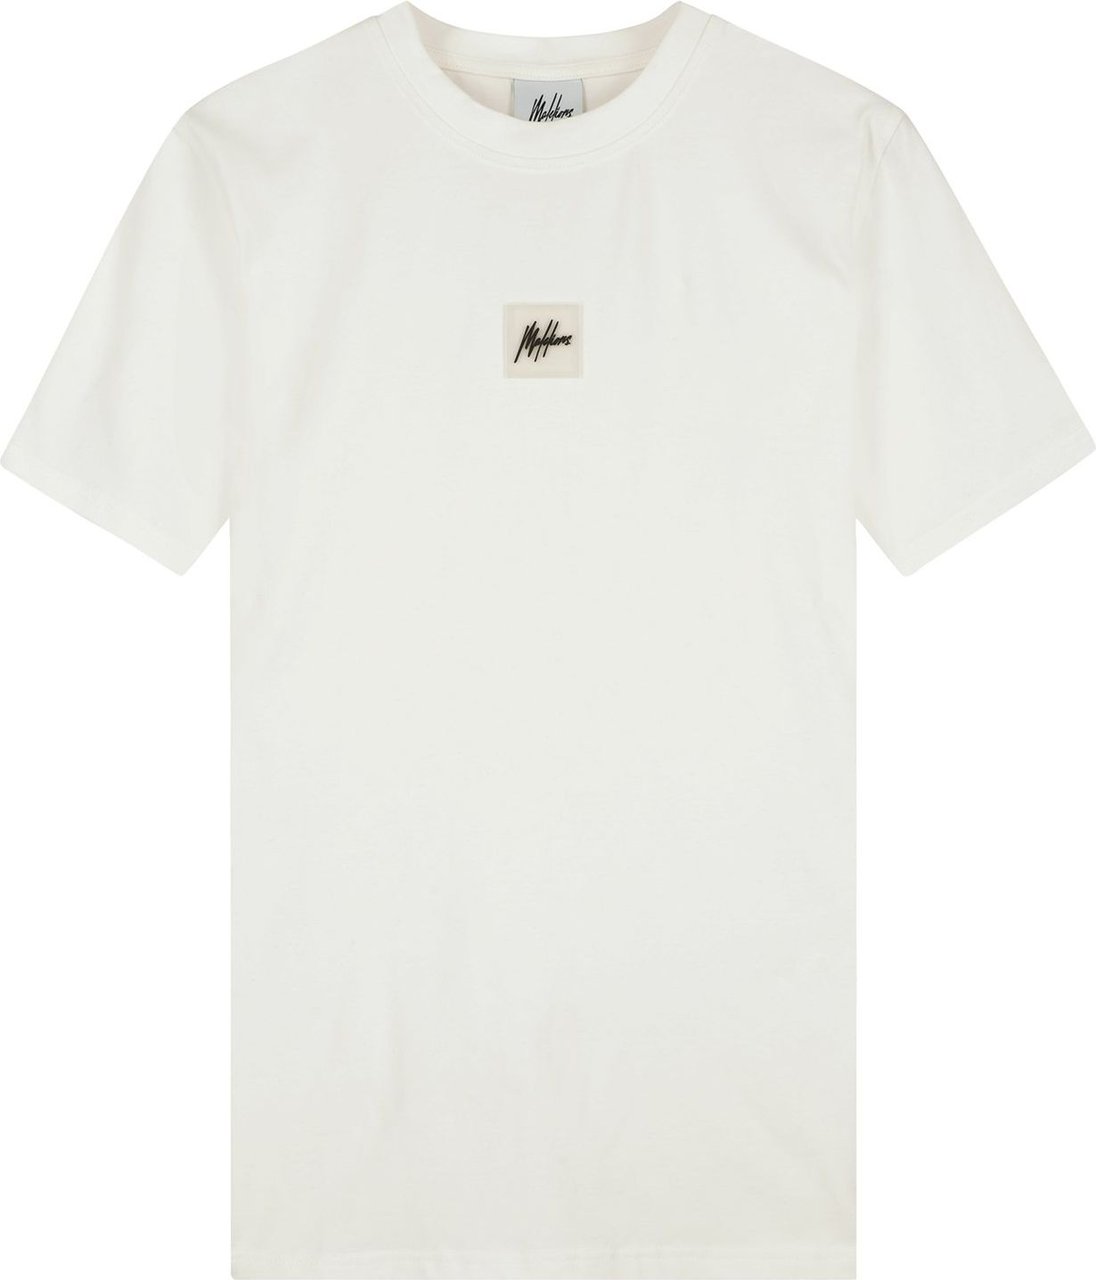 Malelions Women Amy T-Shirt - Off-White Wit